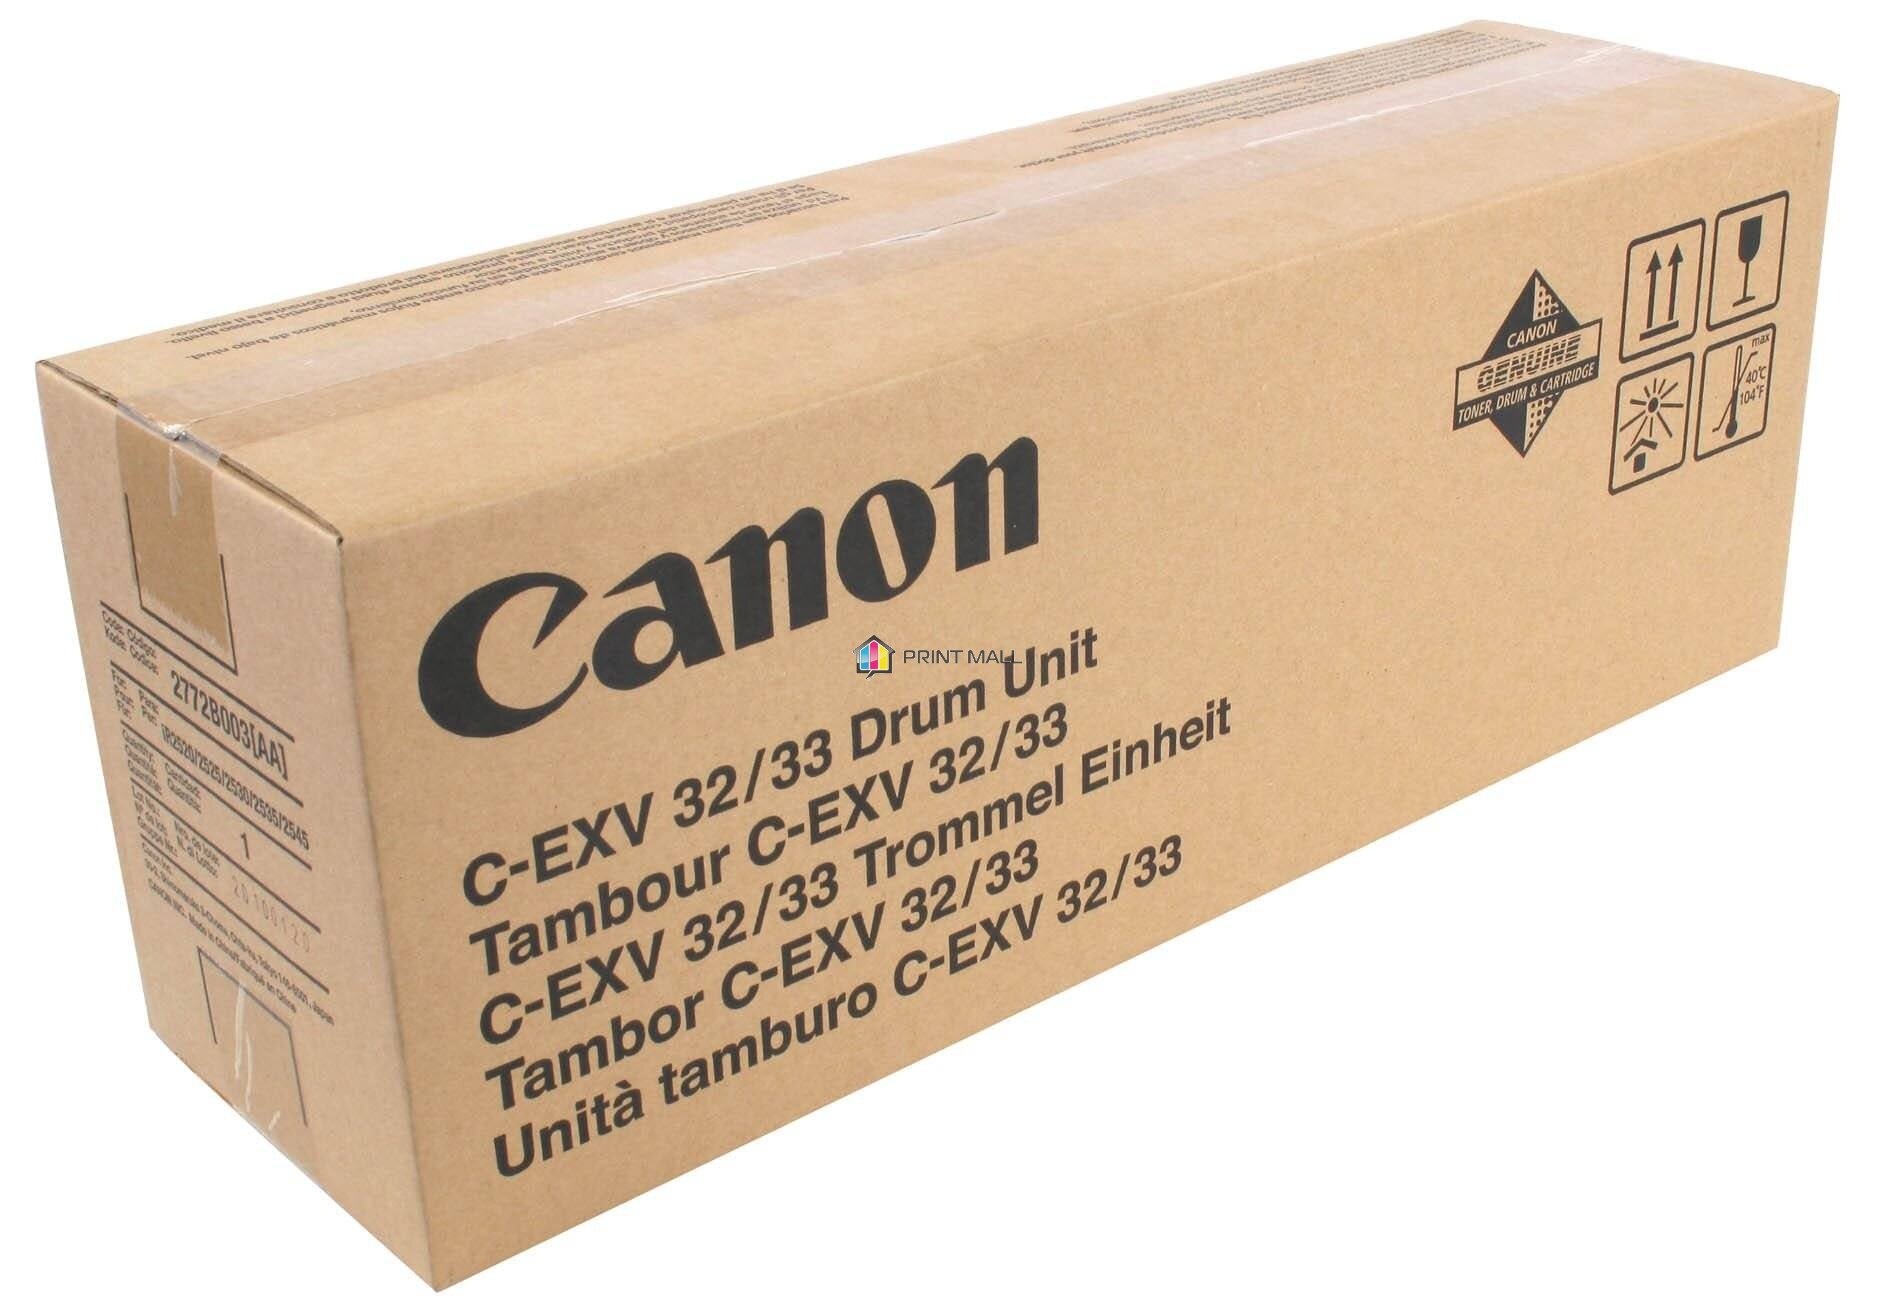 Драм-юнит CANON С-EXV32/C-EXV33, 140 000 страниц iR 2520/2520i/2525/2525i/2530/2530i-140 000, iR 2535/2535i/2545/2545i